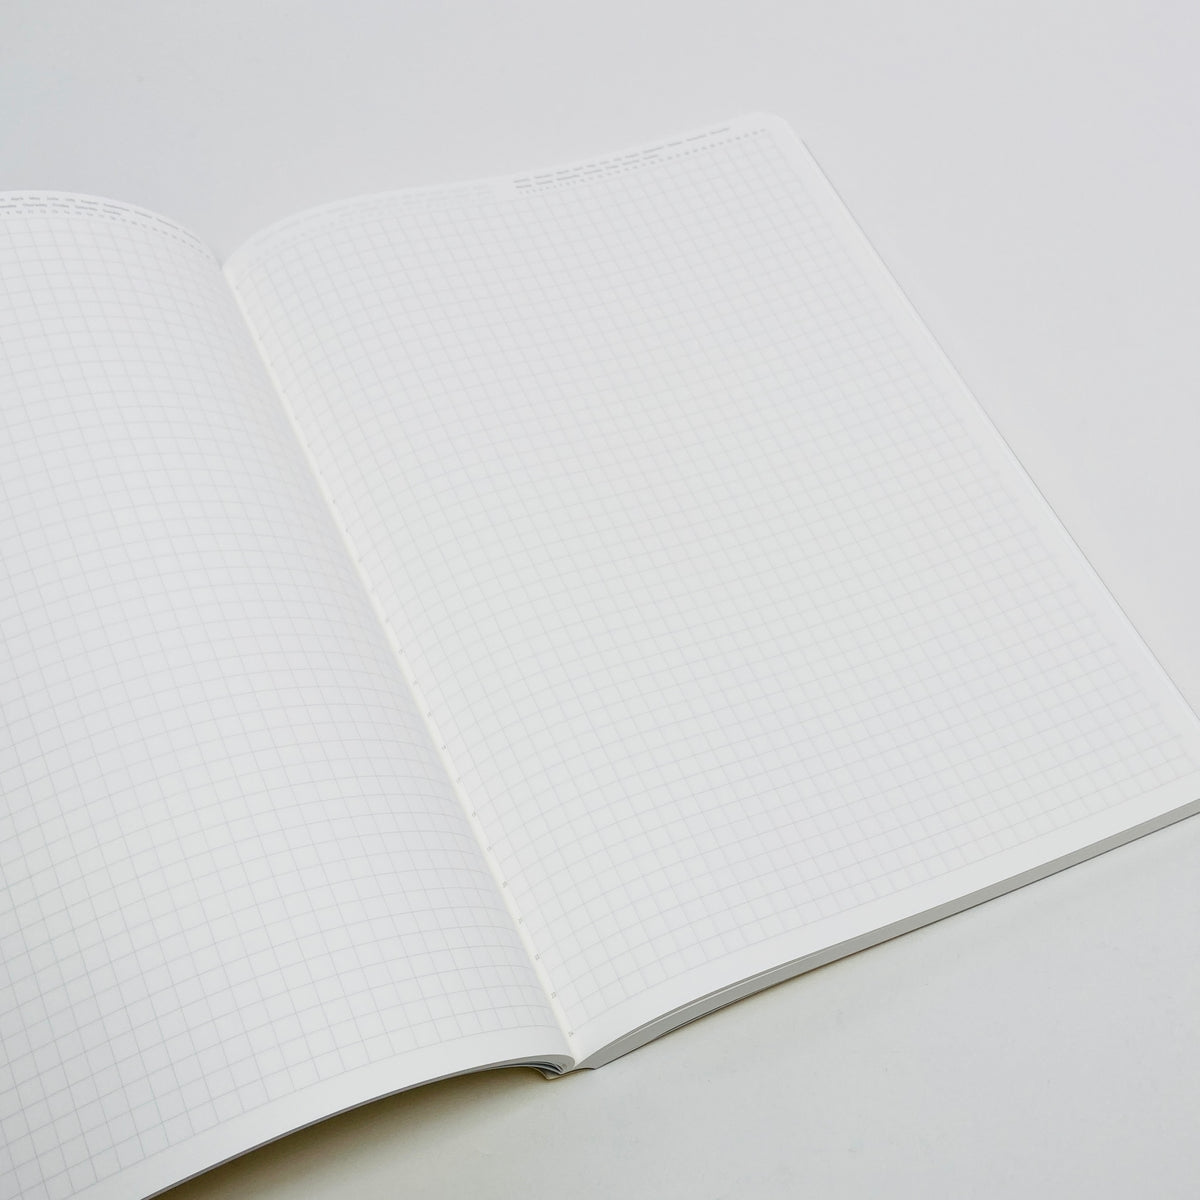 Stalogy 365 Days Notebook (B5) - Black